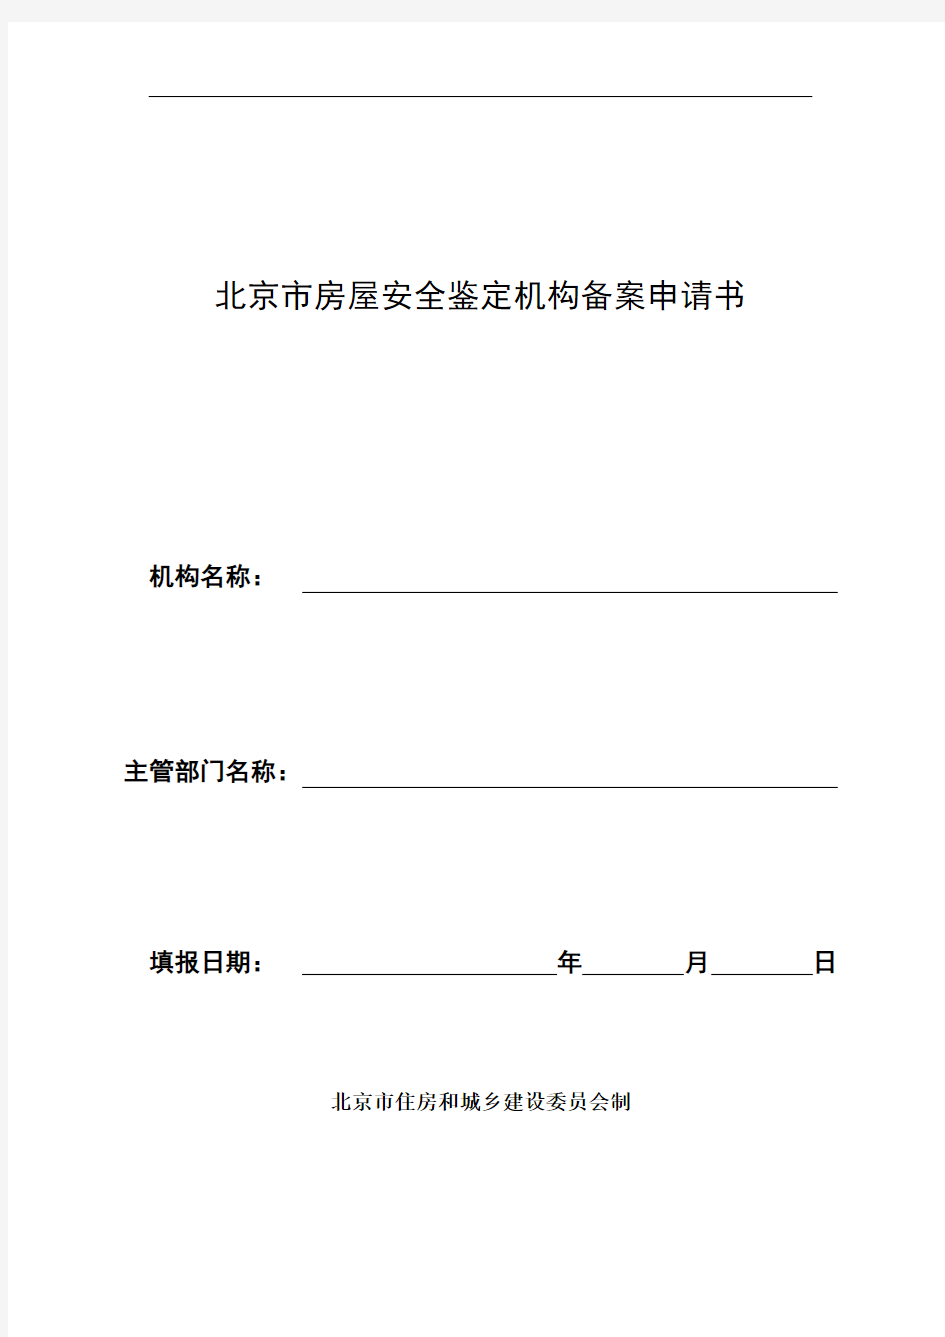 北京市房屋安全鉴定机构备案申请书